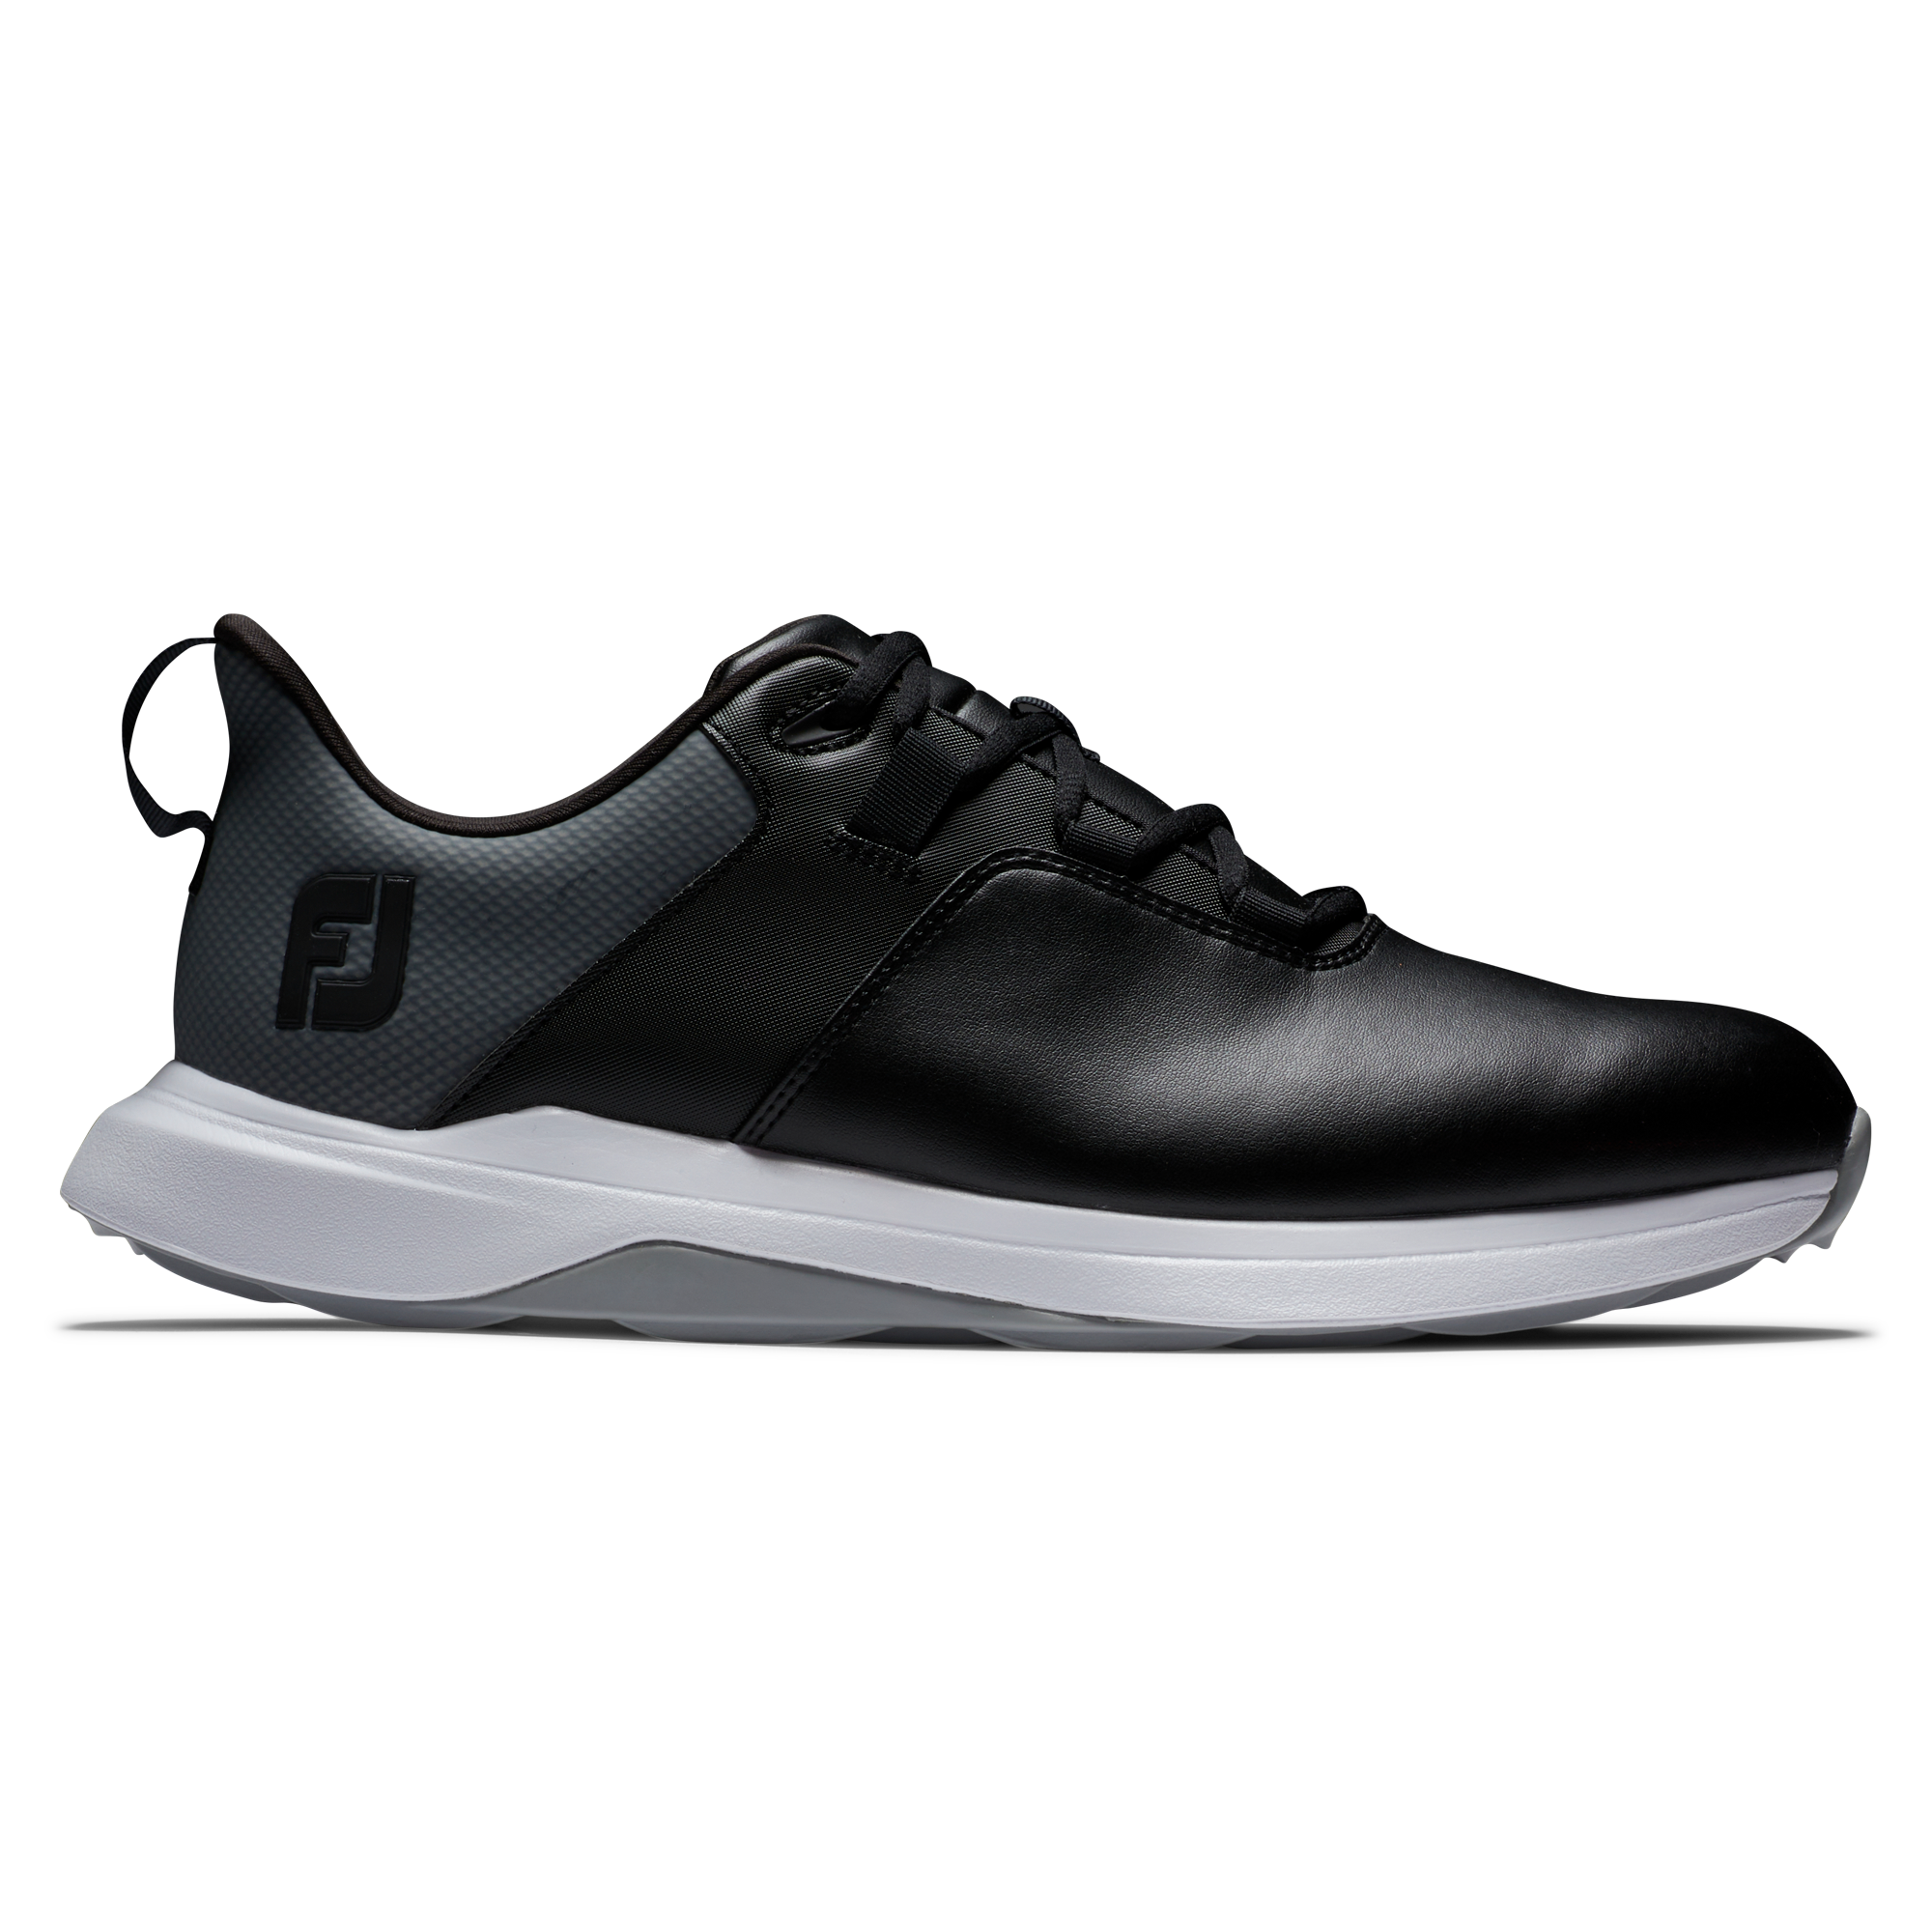 FootJoy ProLite pánské golfové boty, černé, vel. 9 UK